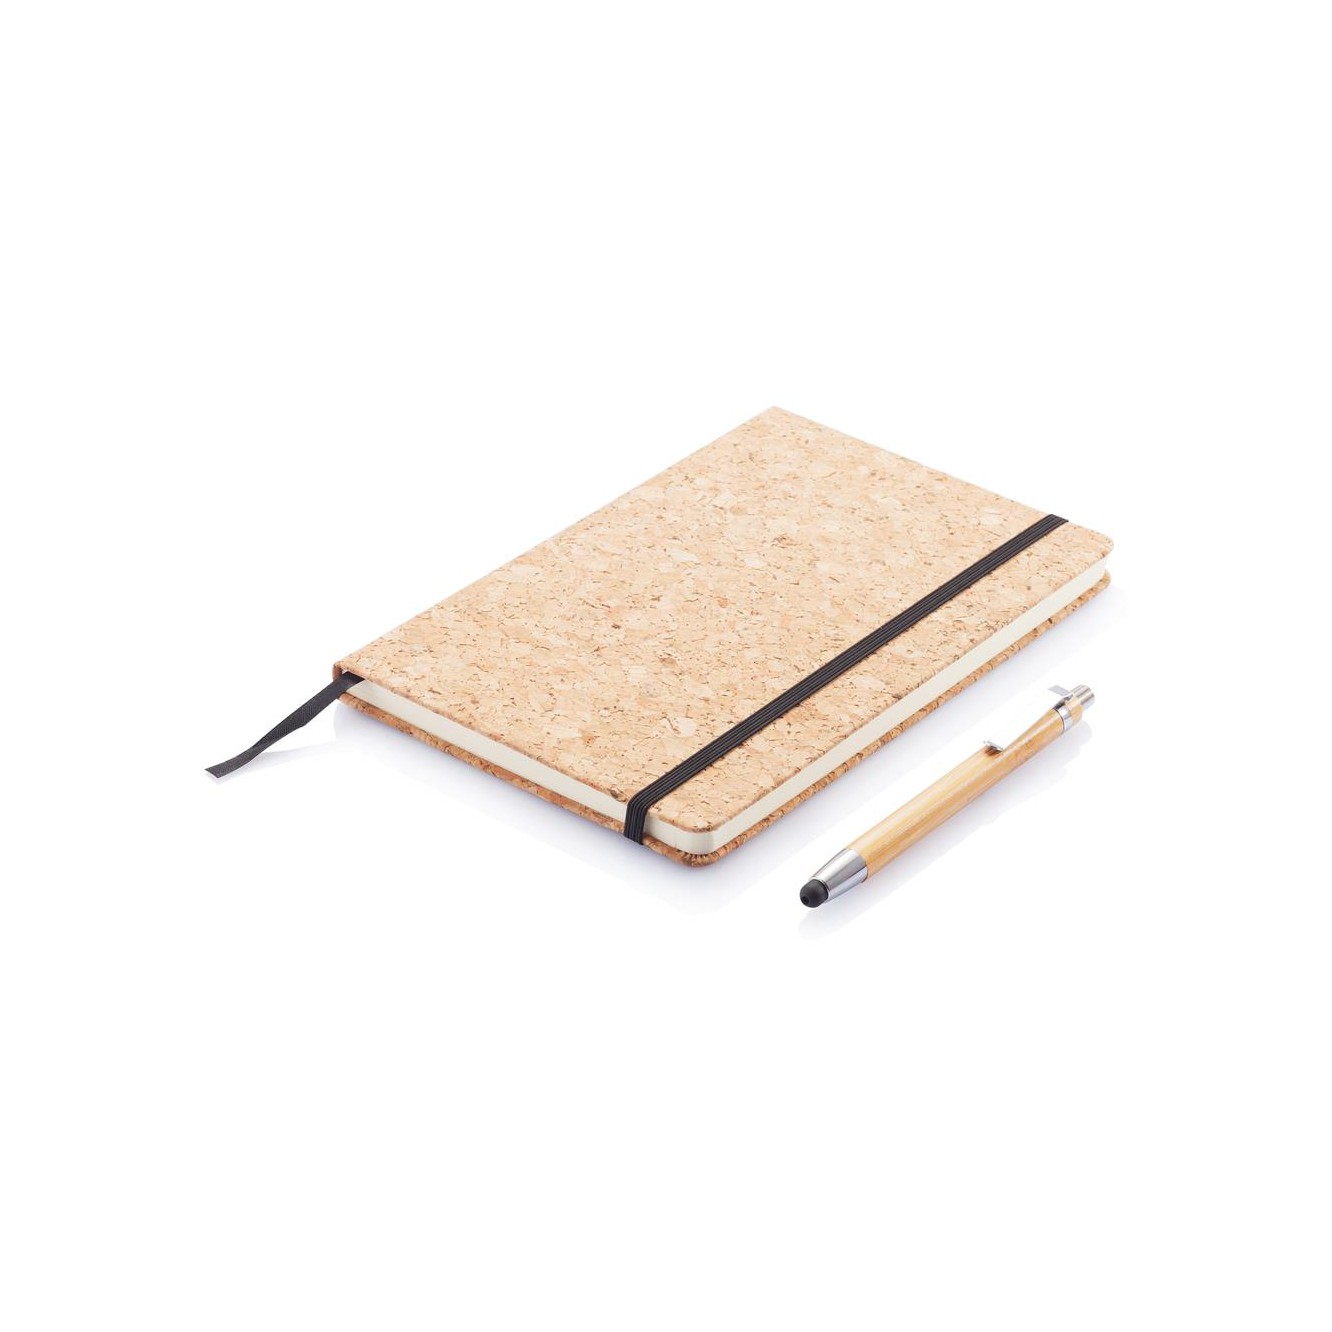 A5 kurken notitieboek incl. touchscreen pen